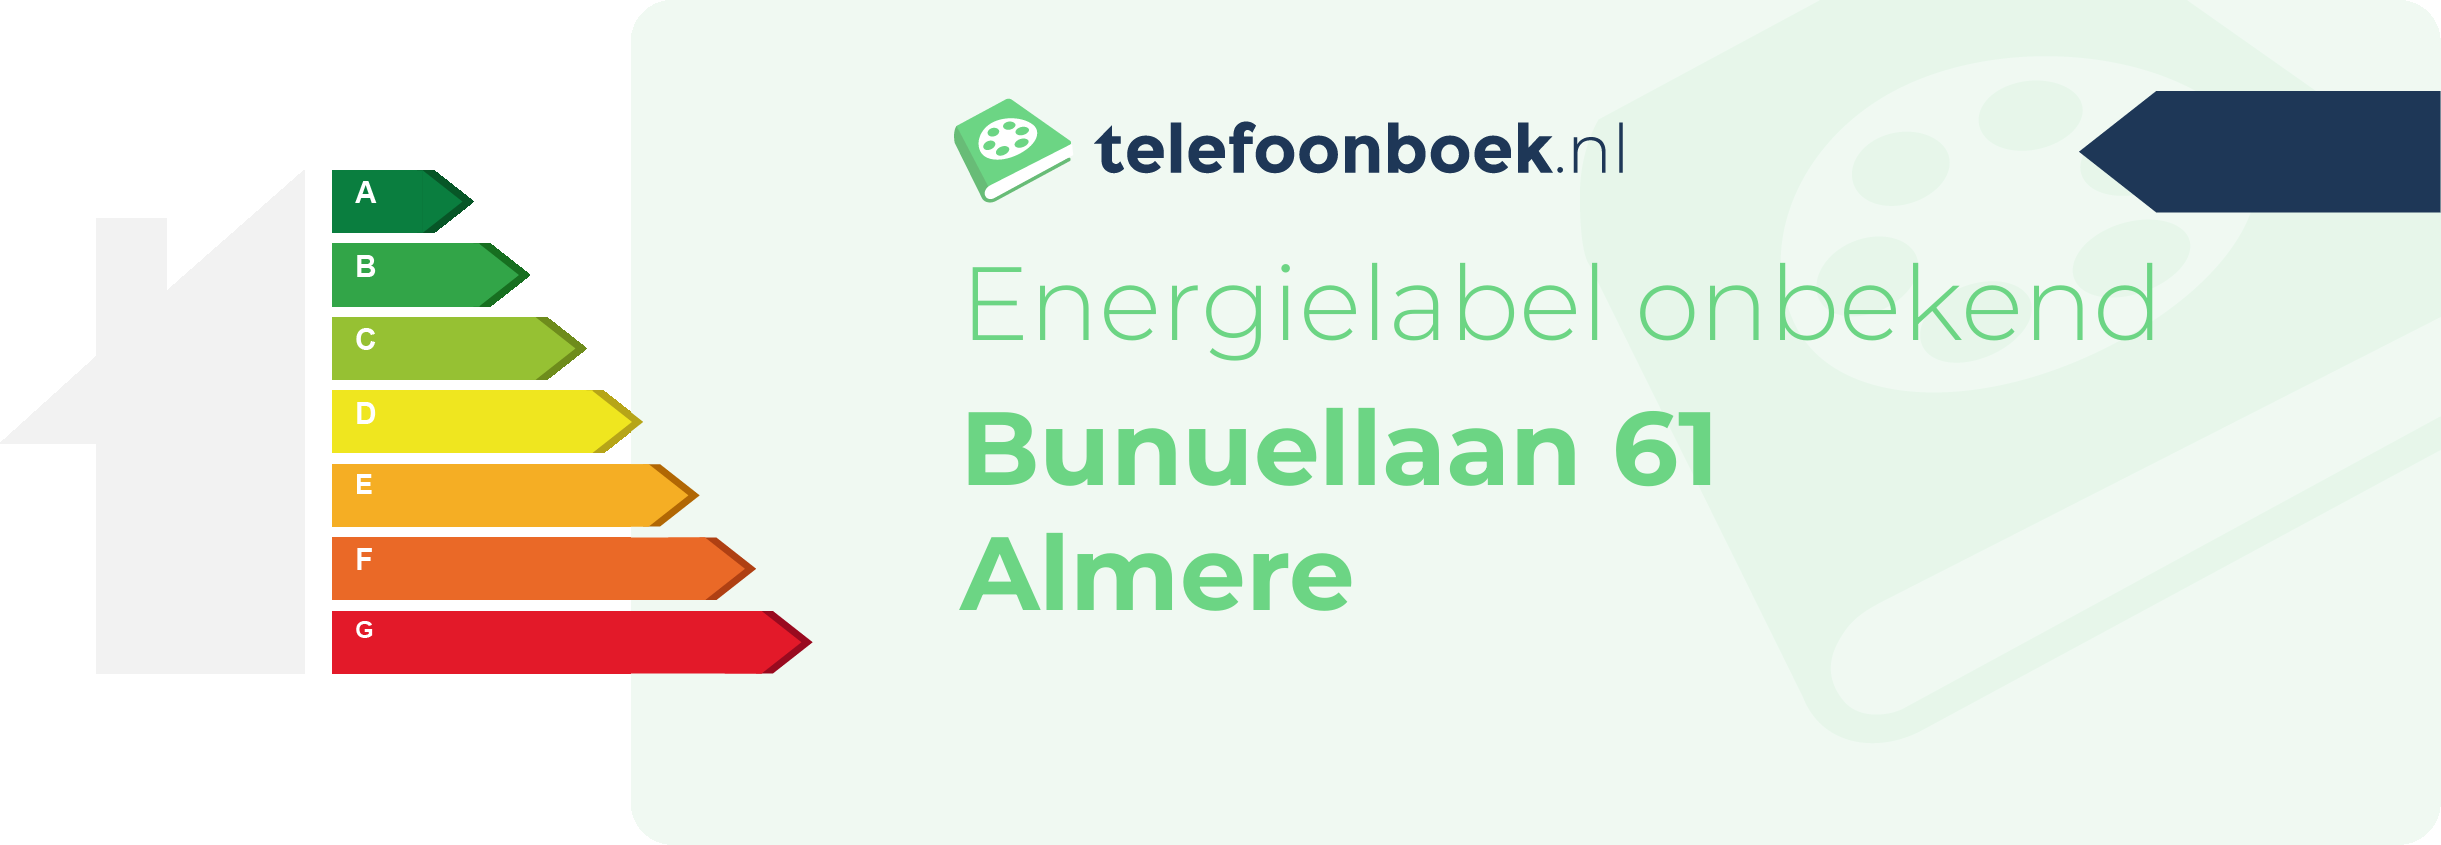 Energielabel Bunuellaan 61 Almere